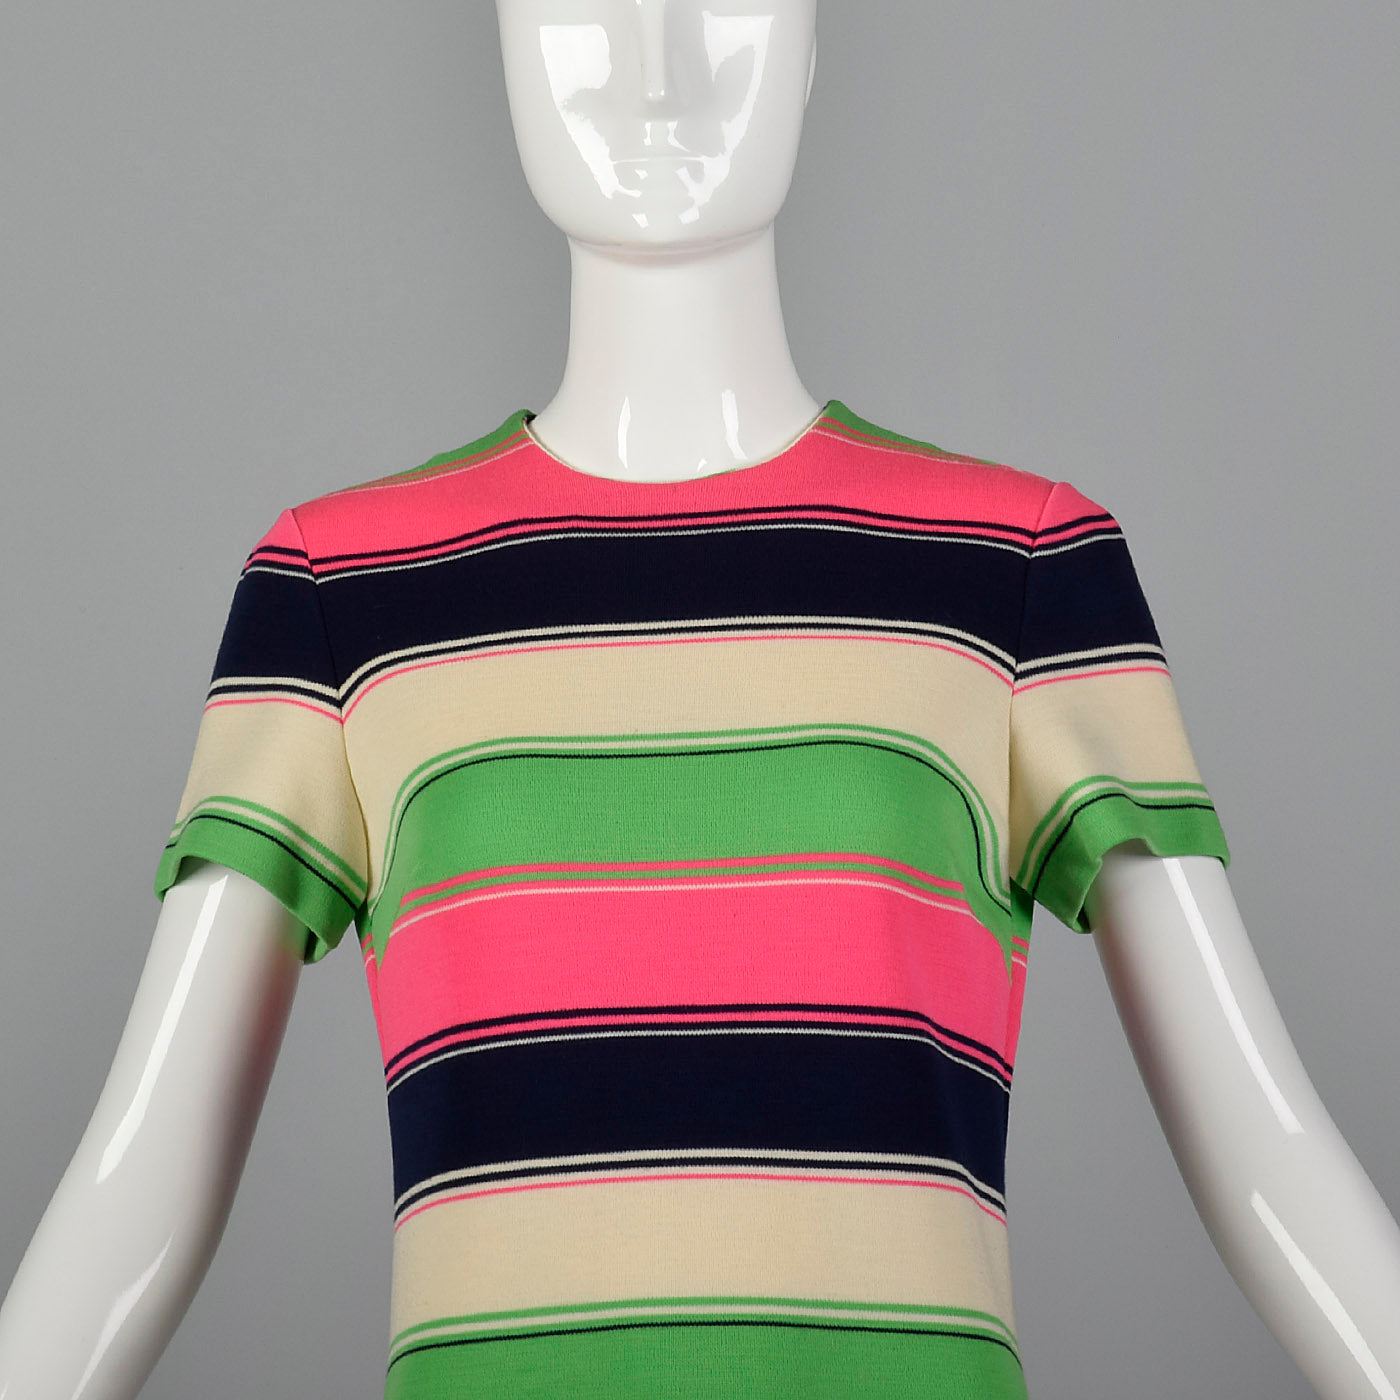 1960s Mod Striped Knit Shift Dress